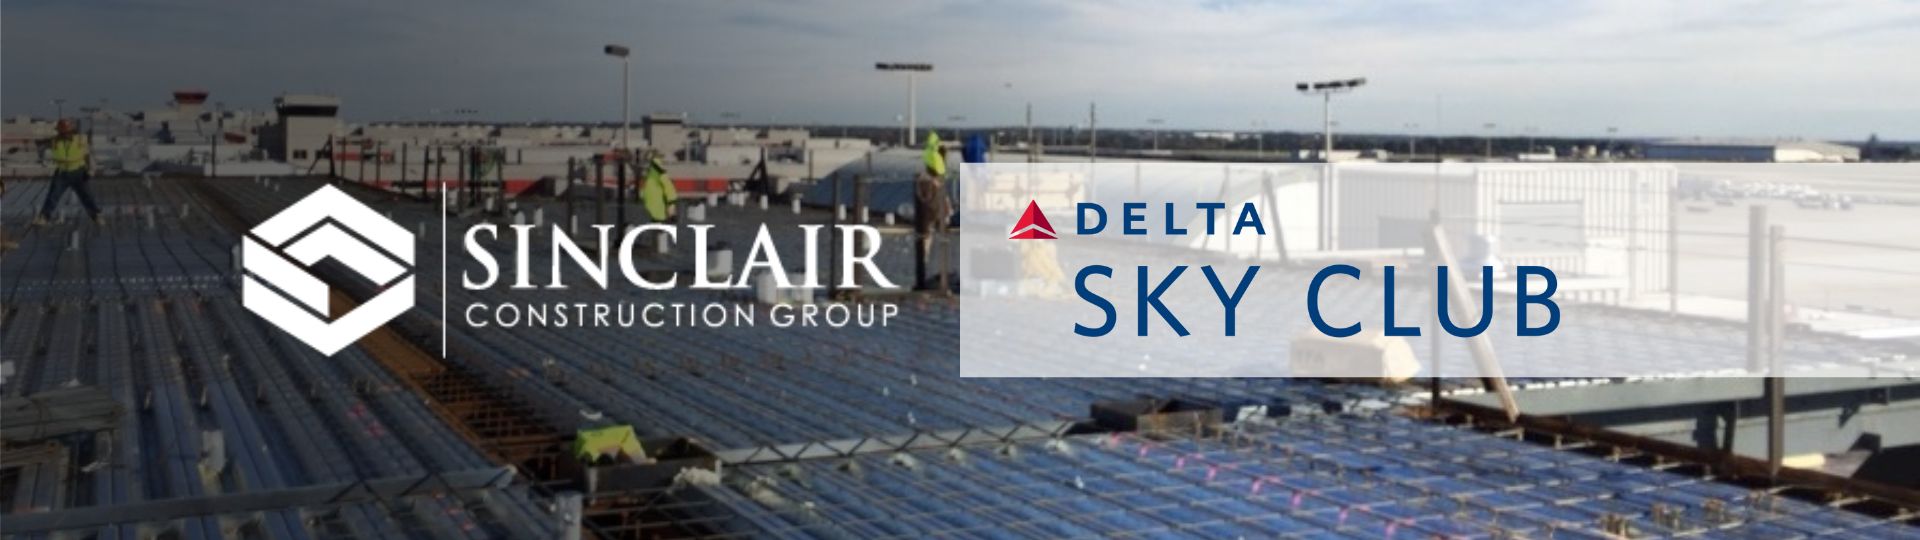 Sinclair CG Job Success Delta Sky Club